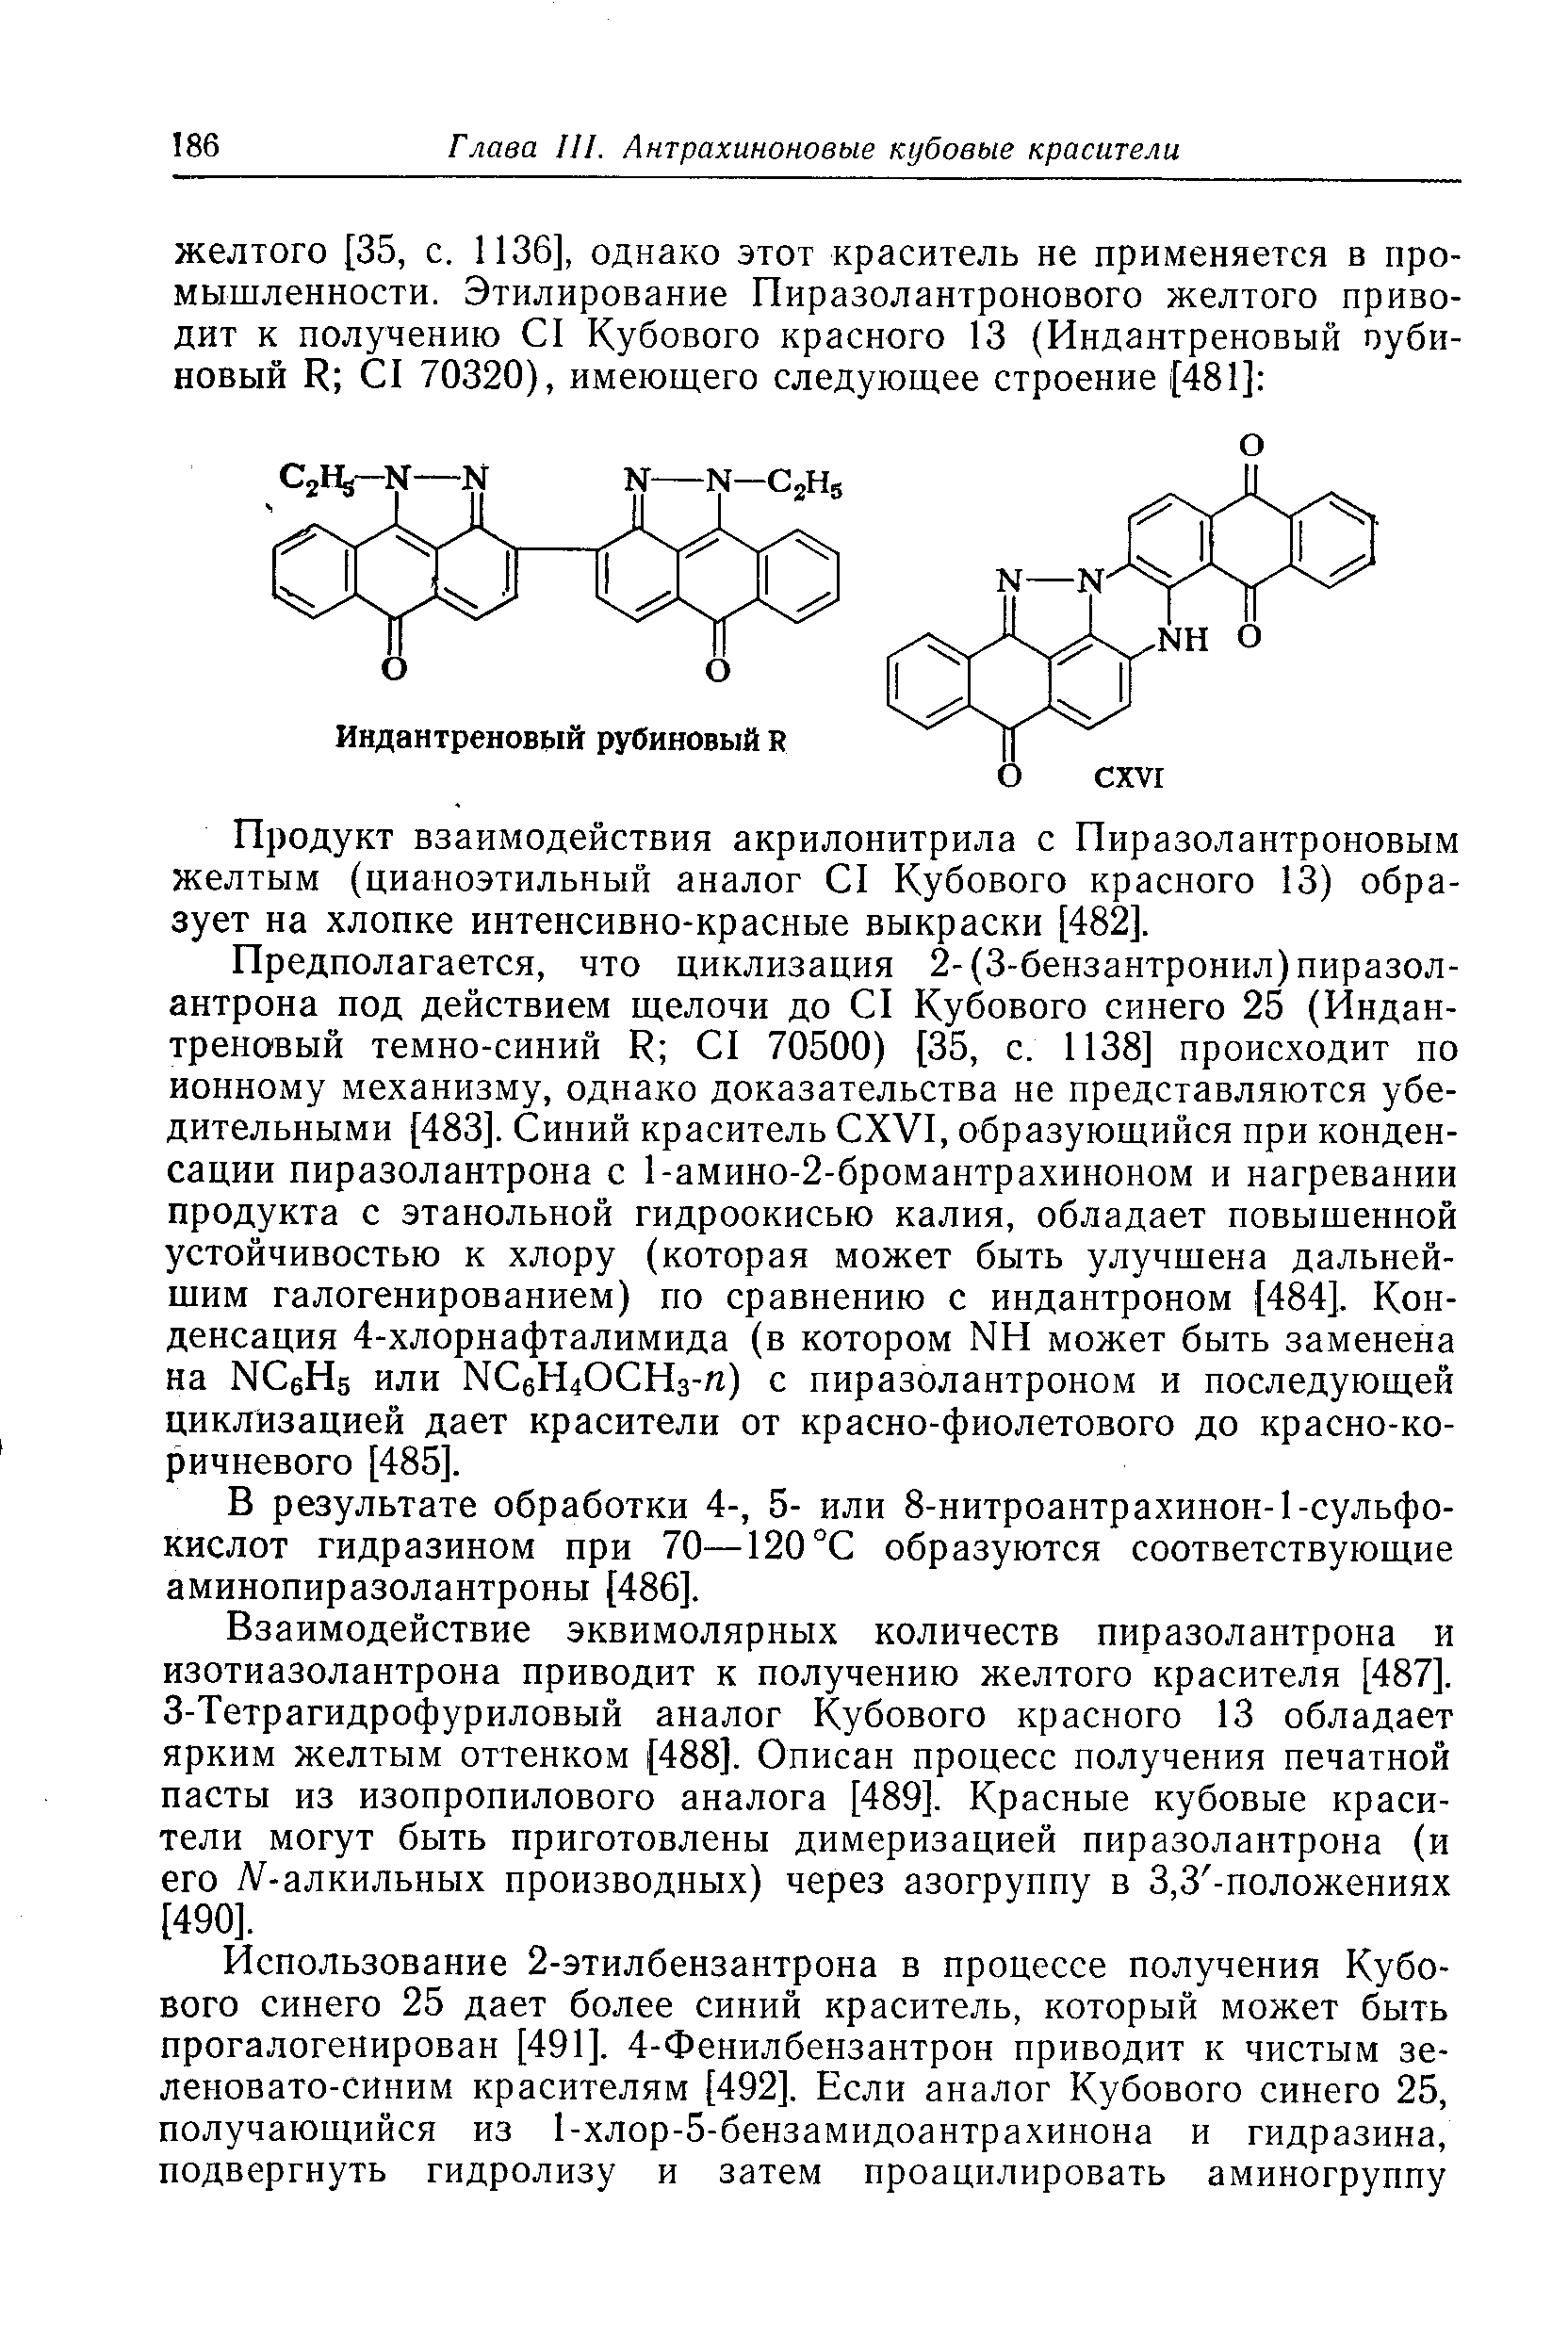 Продукт взаимодействия акрилонитрила с Пиразолантроновым желтым (цианоэтильный аналог I Кубового красного 13) образует на хлопке интенсивно-красные выкраски [482].